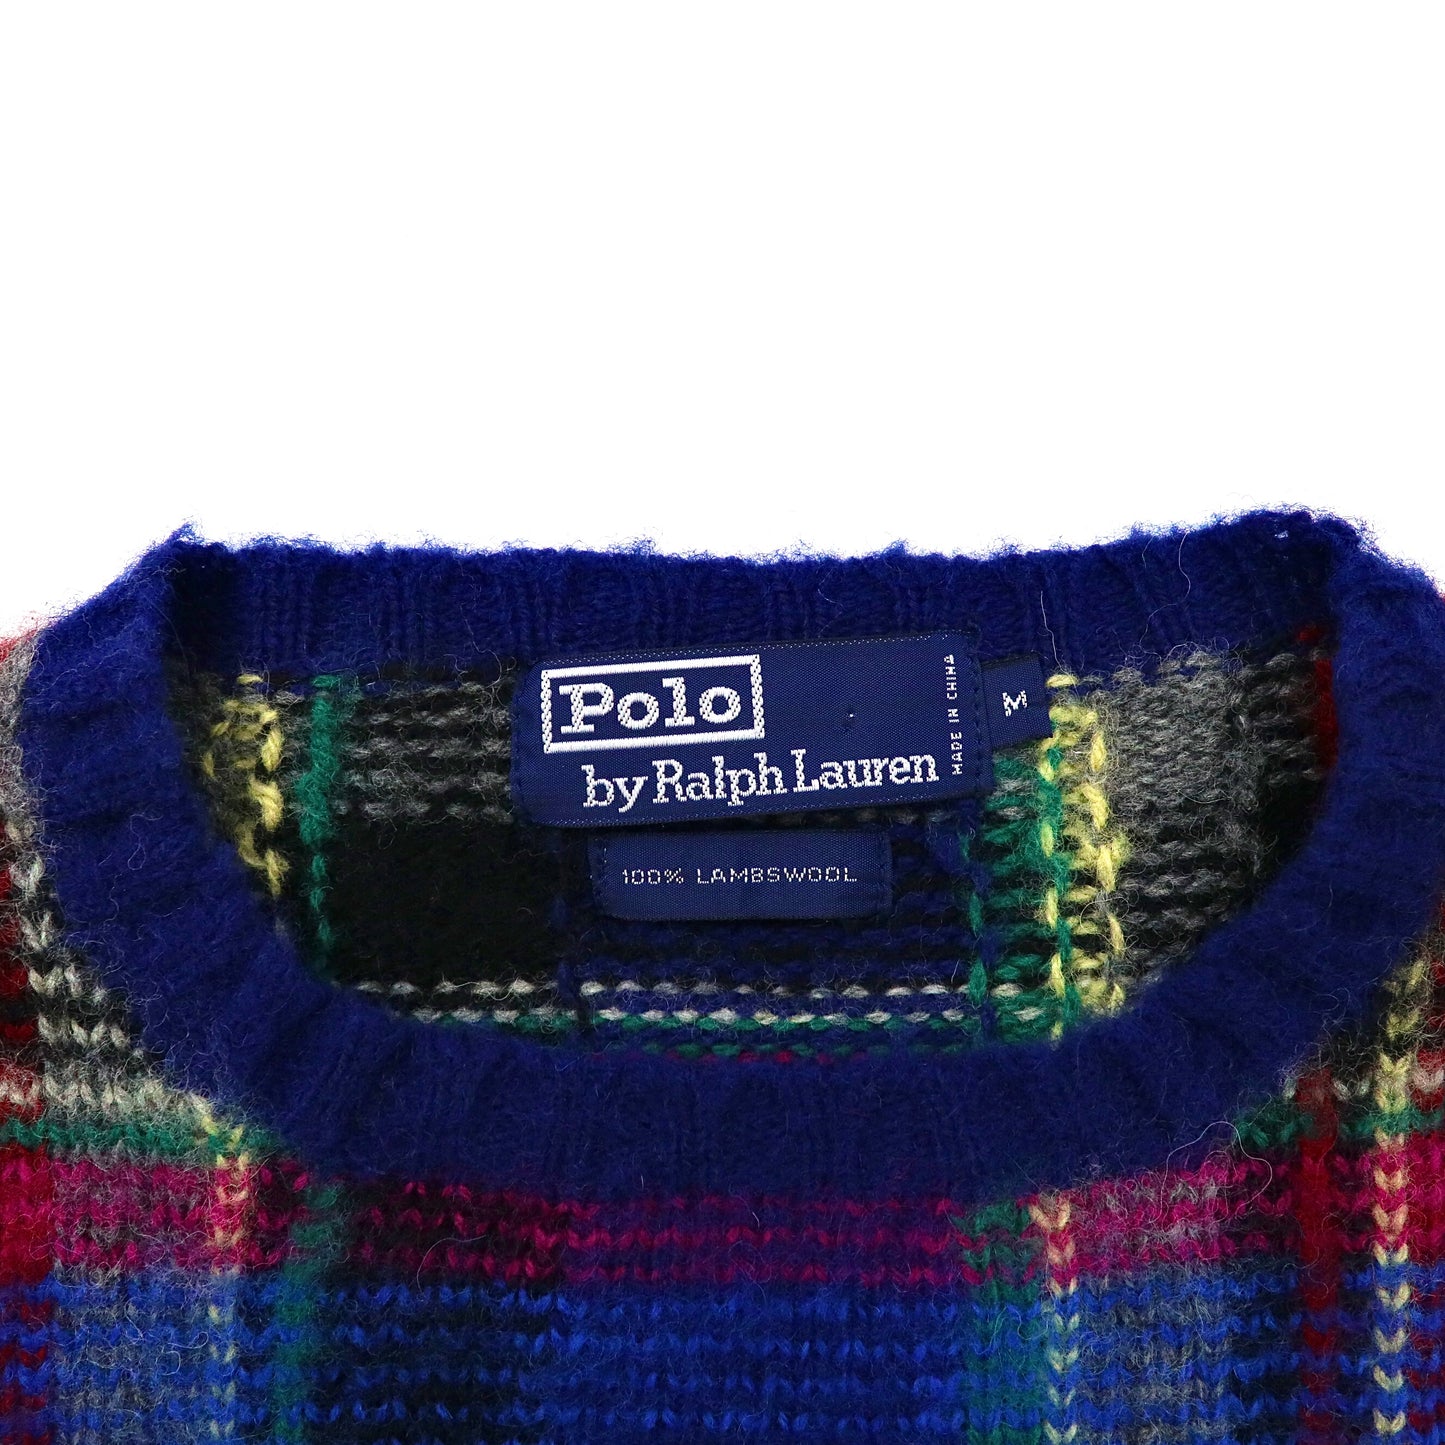 Polo by Ralph Lauren クルーネックニット セーター M ブルー タータンチェック ラムウール 未使用品